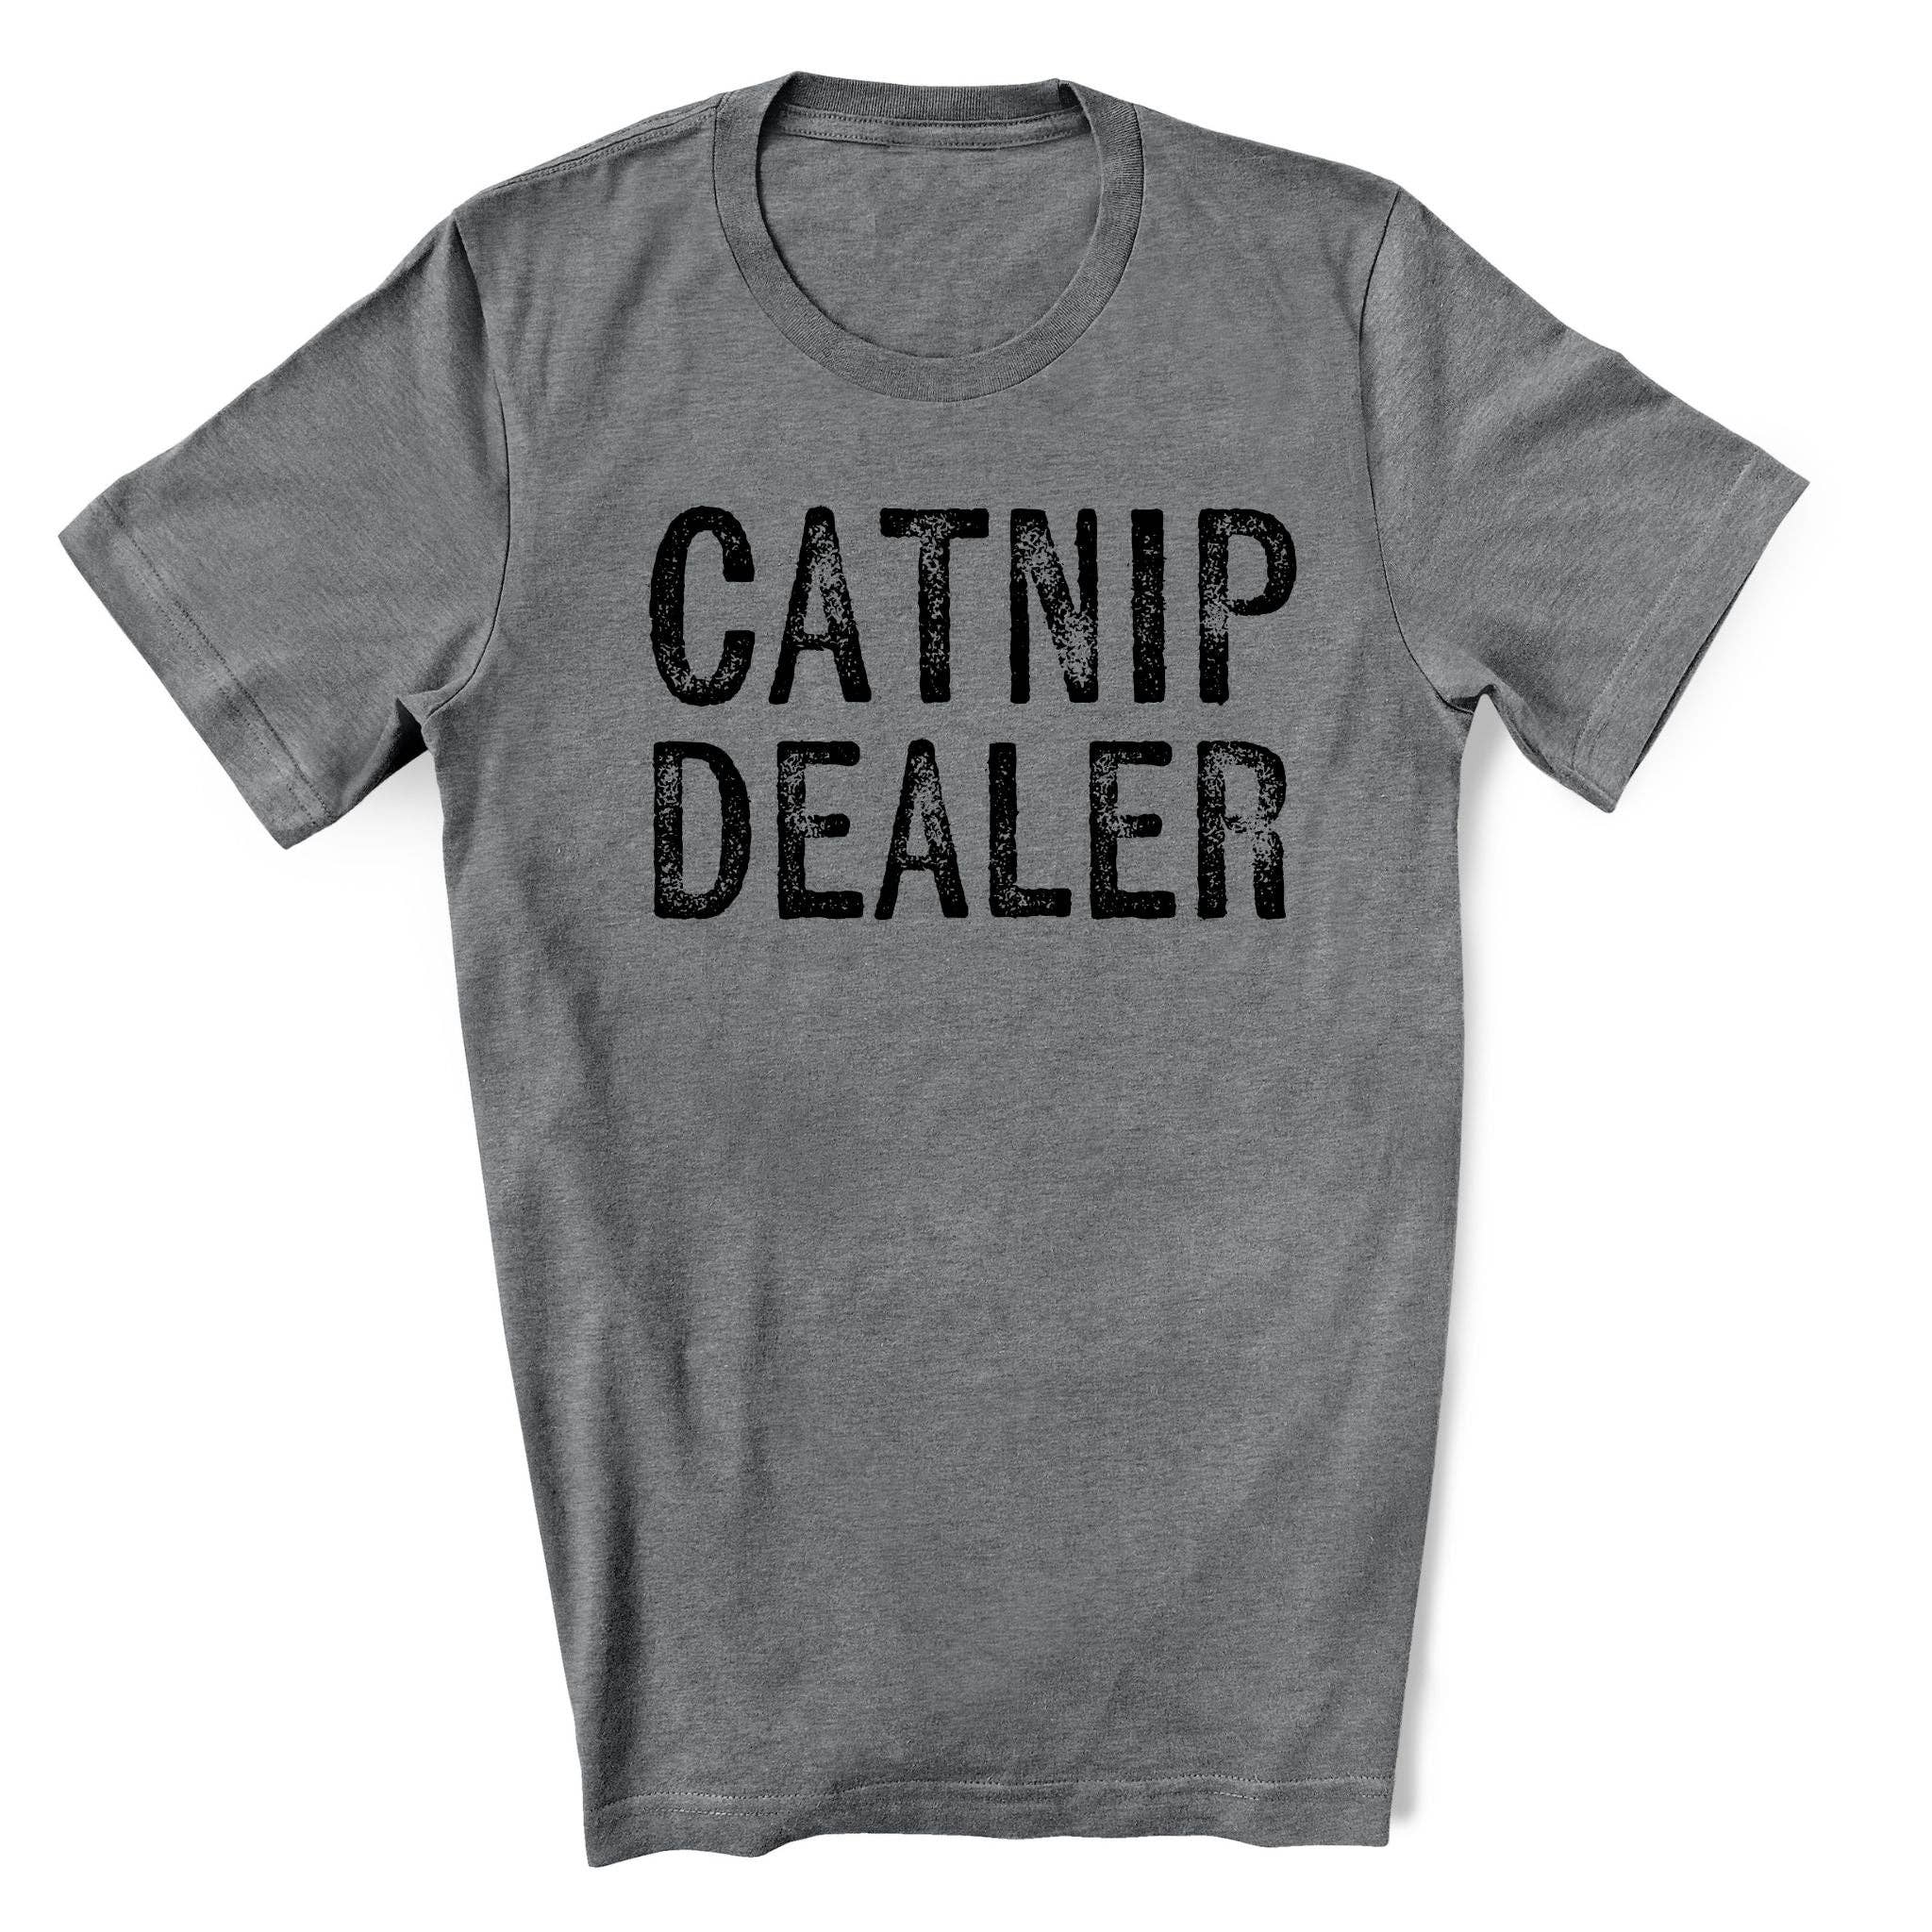 "Catnip Dealer" Funny Shirt